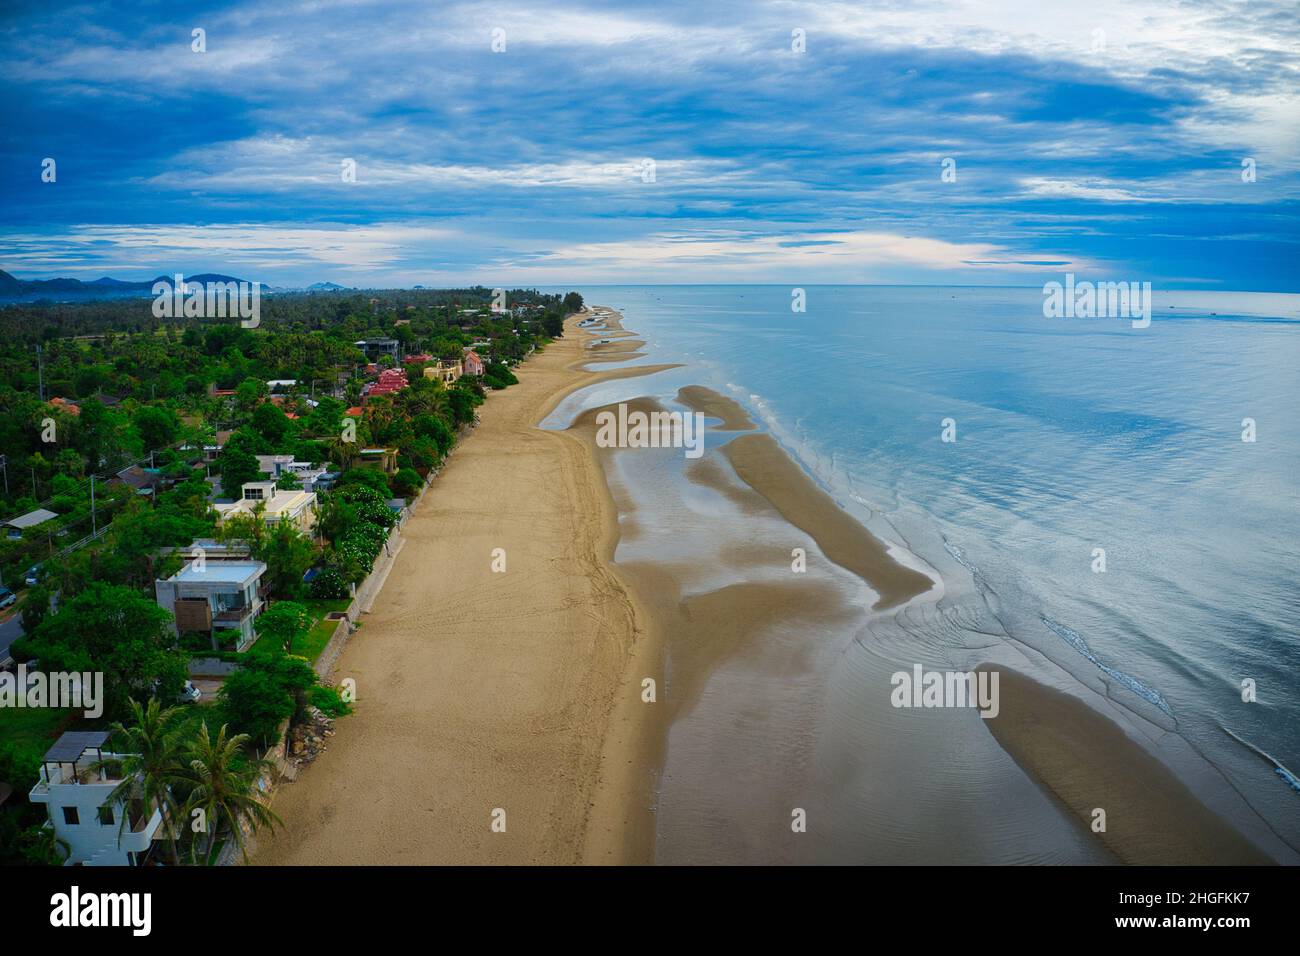 La bella spiaggia di Pak Nam Pran in Thailandia, fotografata con un drone dall'alto a bassa marea e in una giornata nuvolosa! Foto Stock